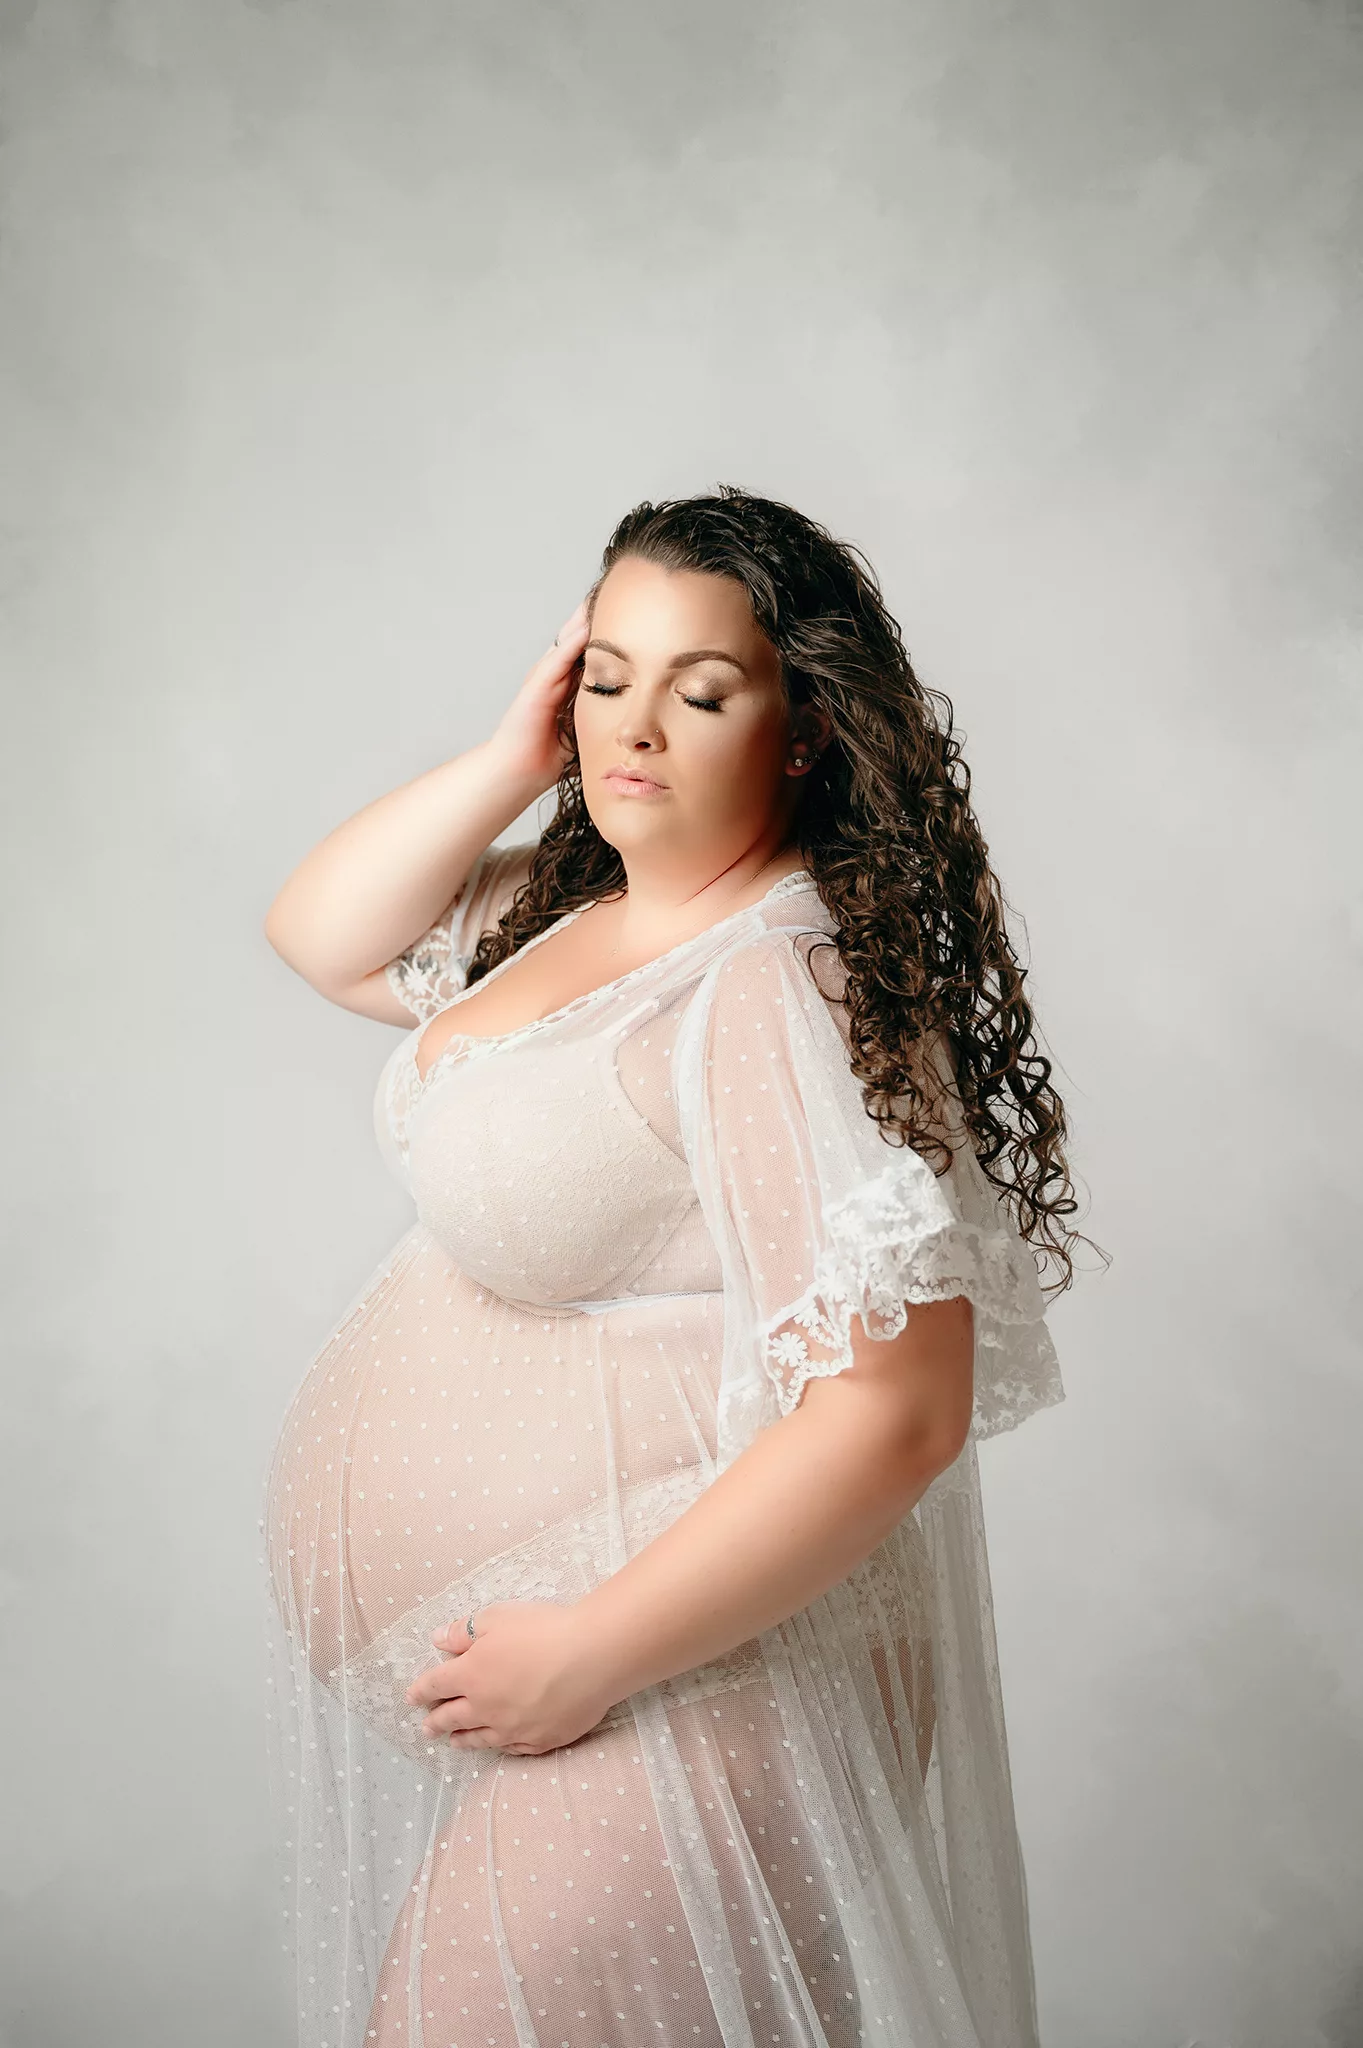 elegant maternity photoshoot with sheer white dress